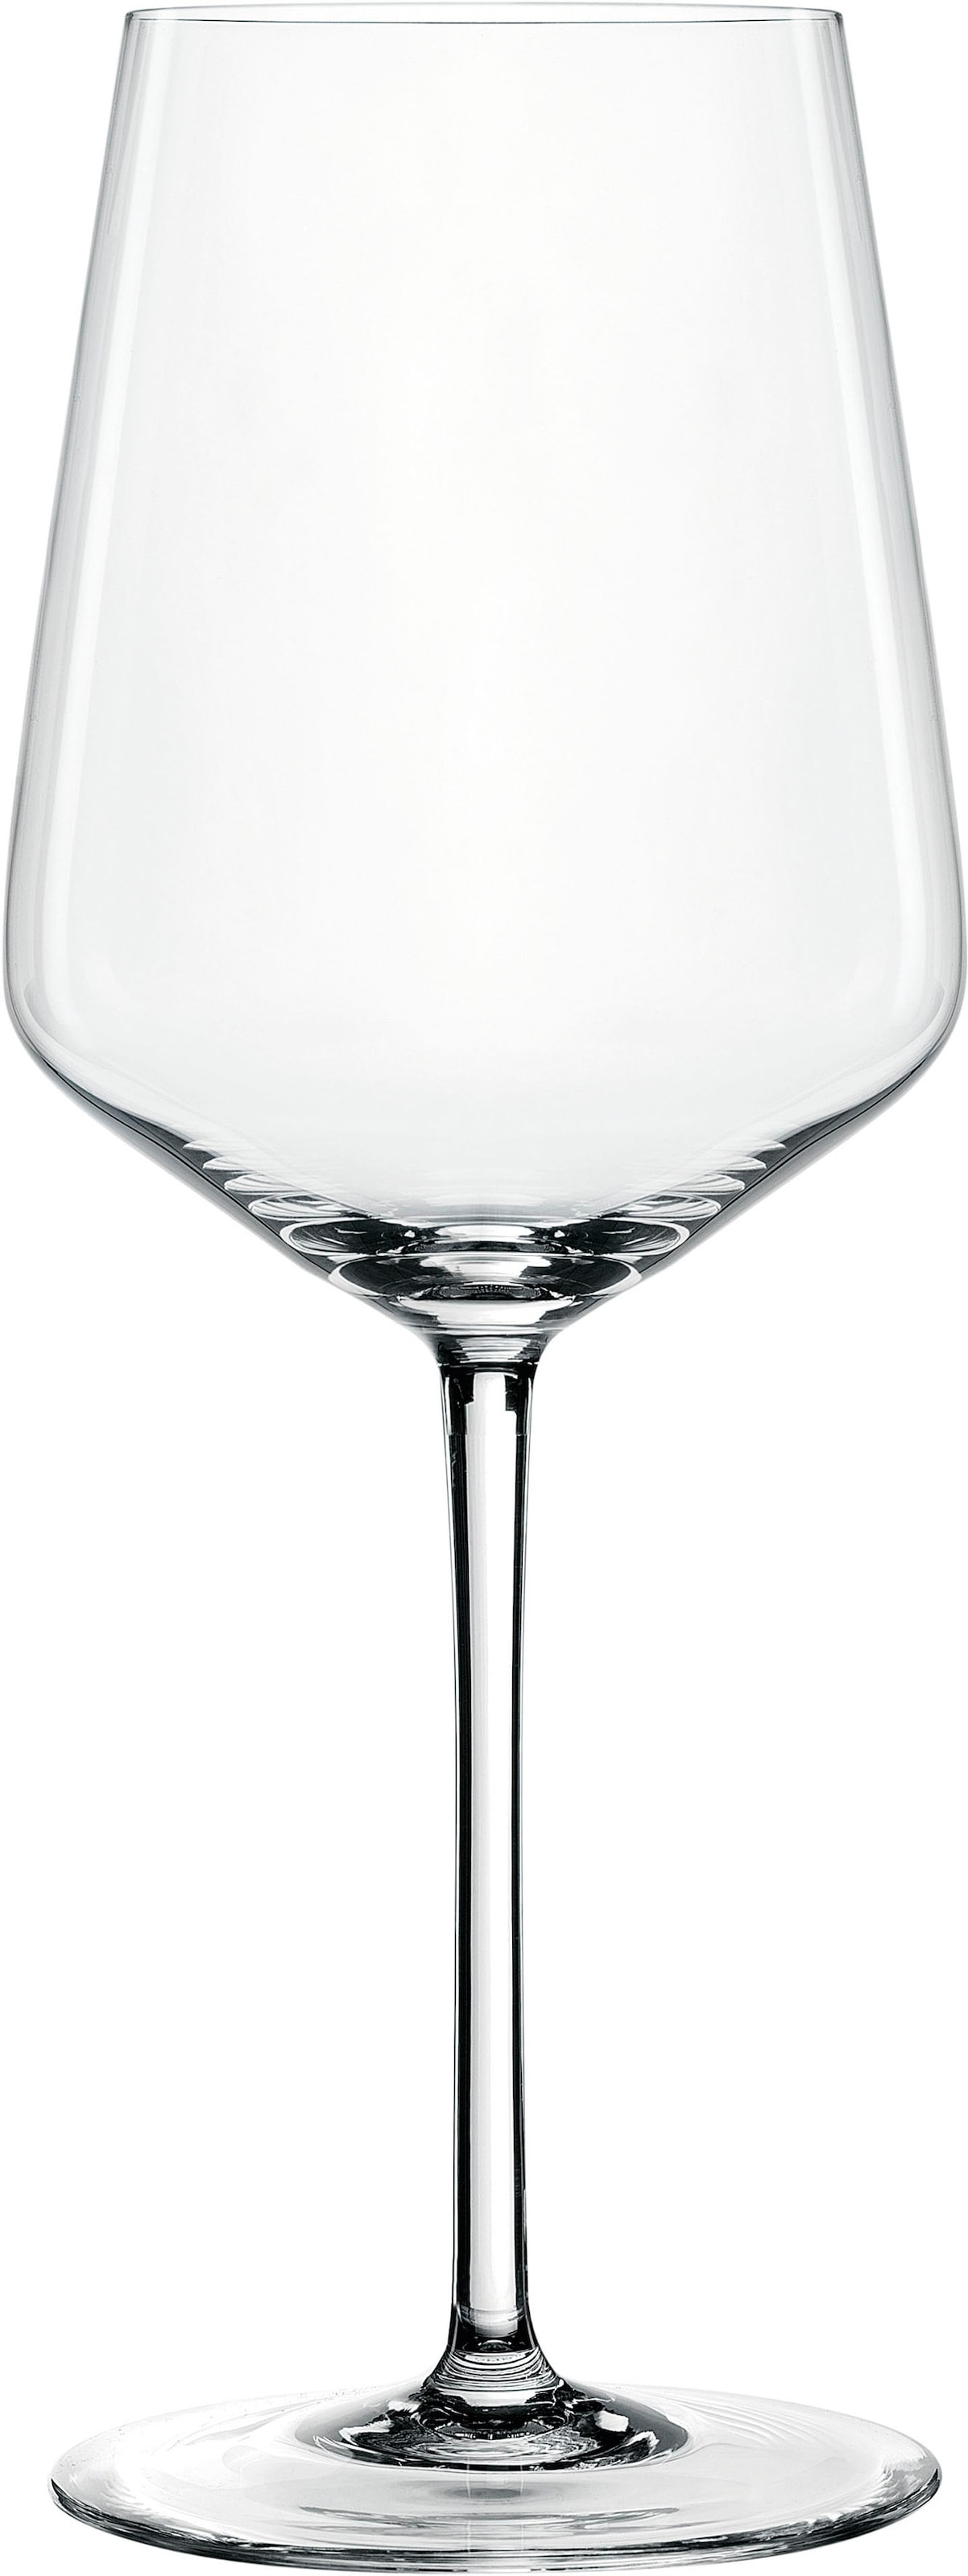 SPIEGELAU Weißweinglas "Style", (Set, 4 tlg., Set bestehend aus 4 Gläsern), 440 ml, 4-teilig